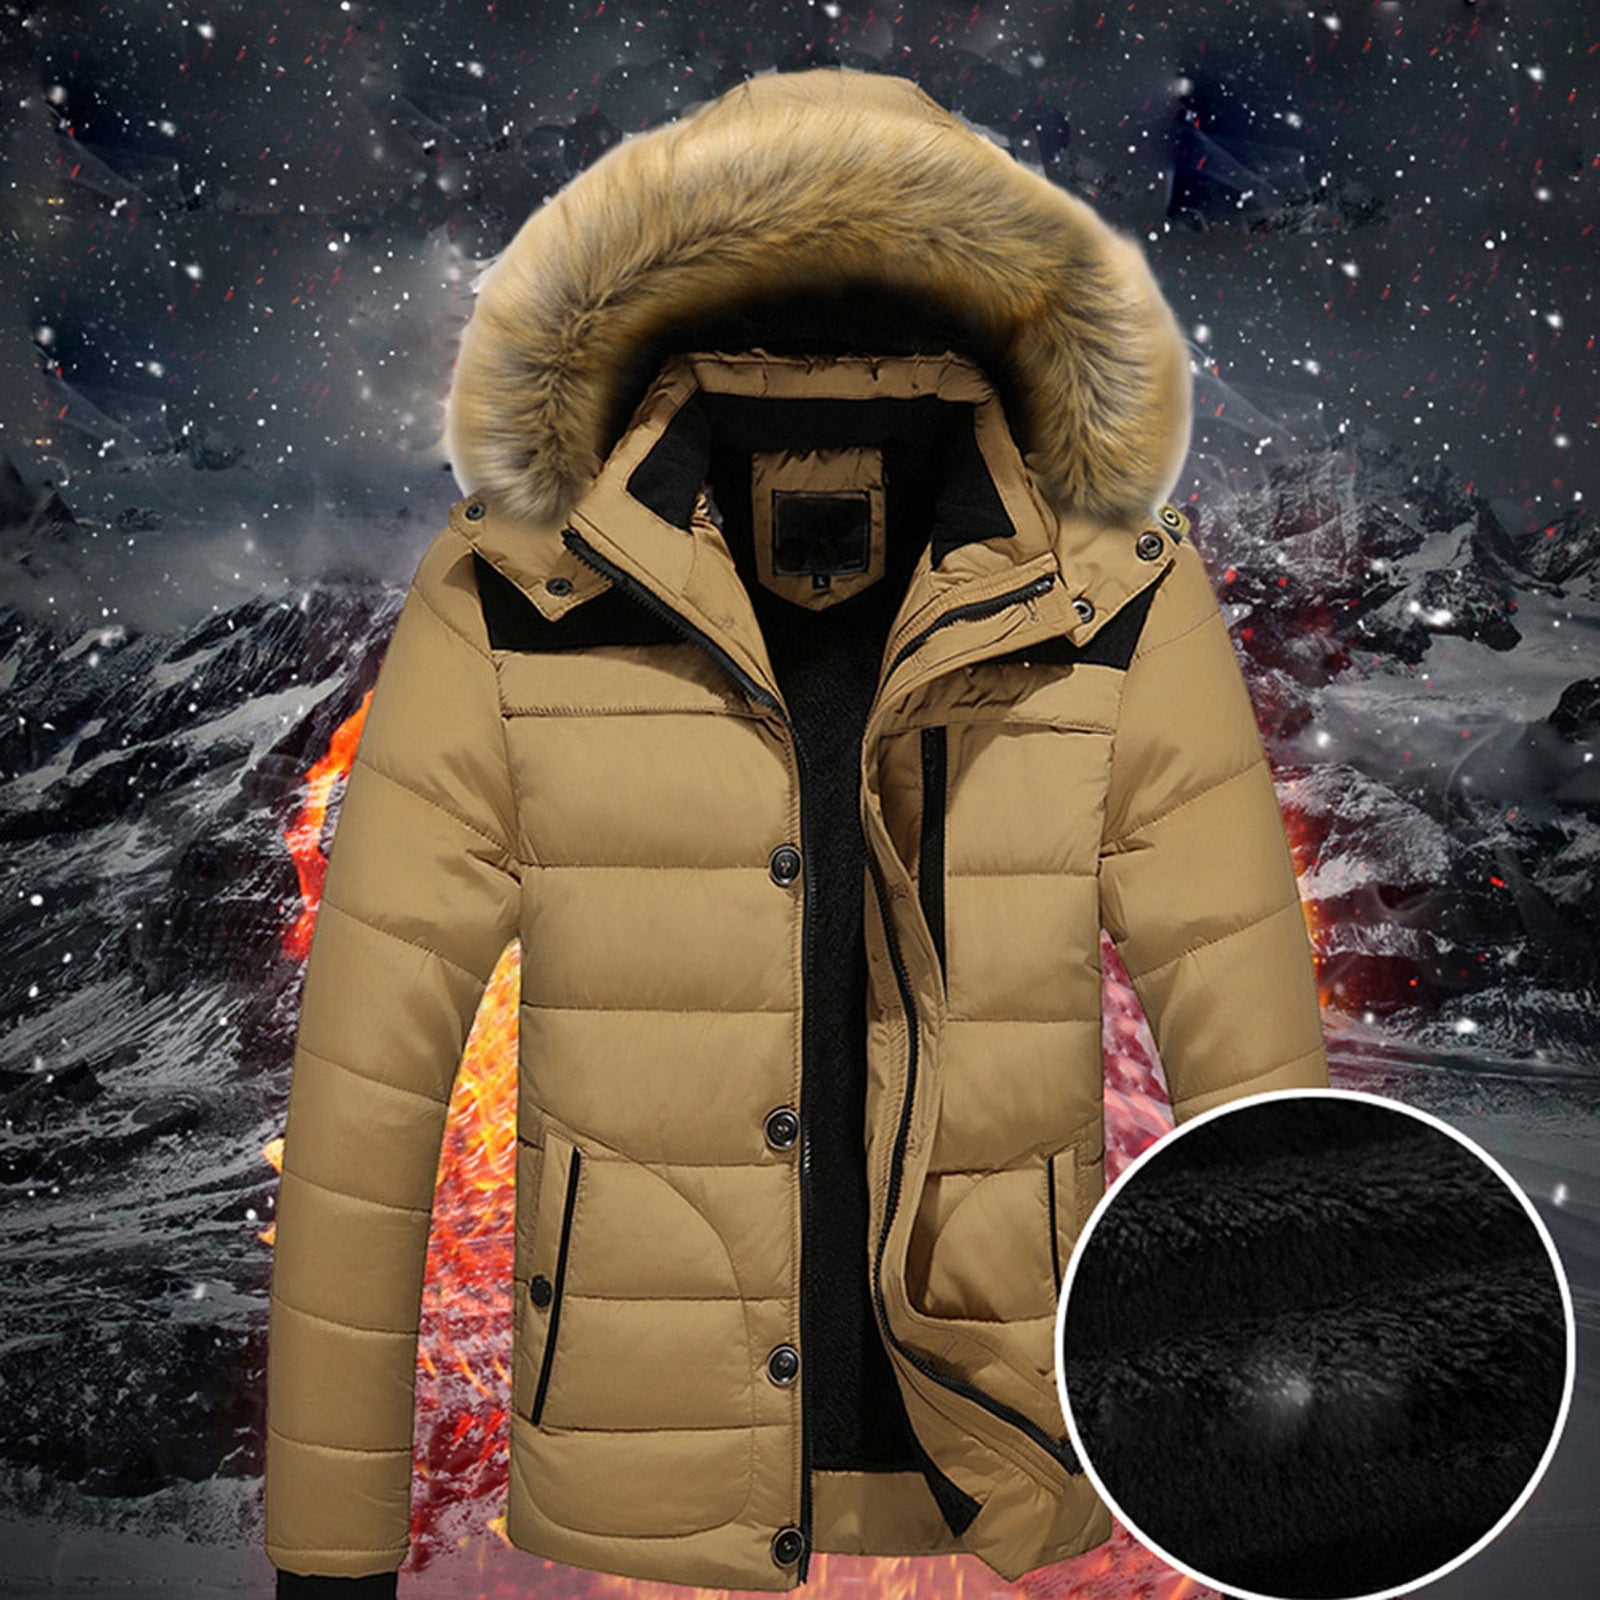 ELFINDEA Men Outdoor Warm Winter Thick Jacket Hooded Coat Jacket With ...